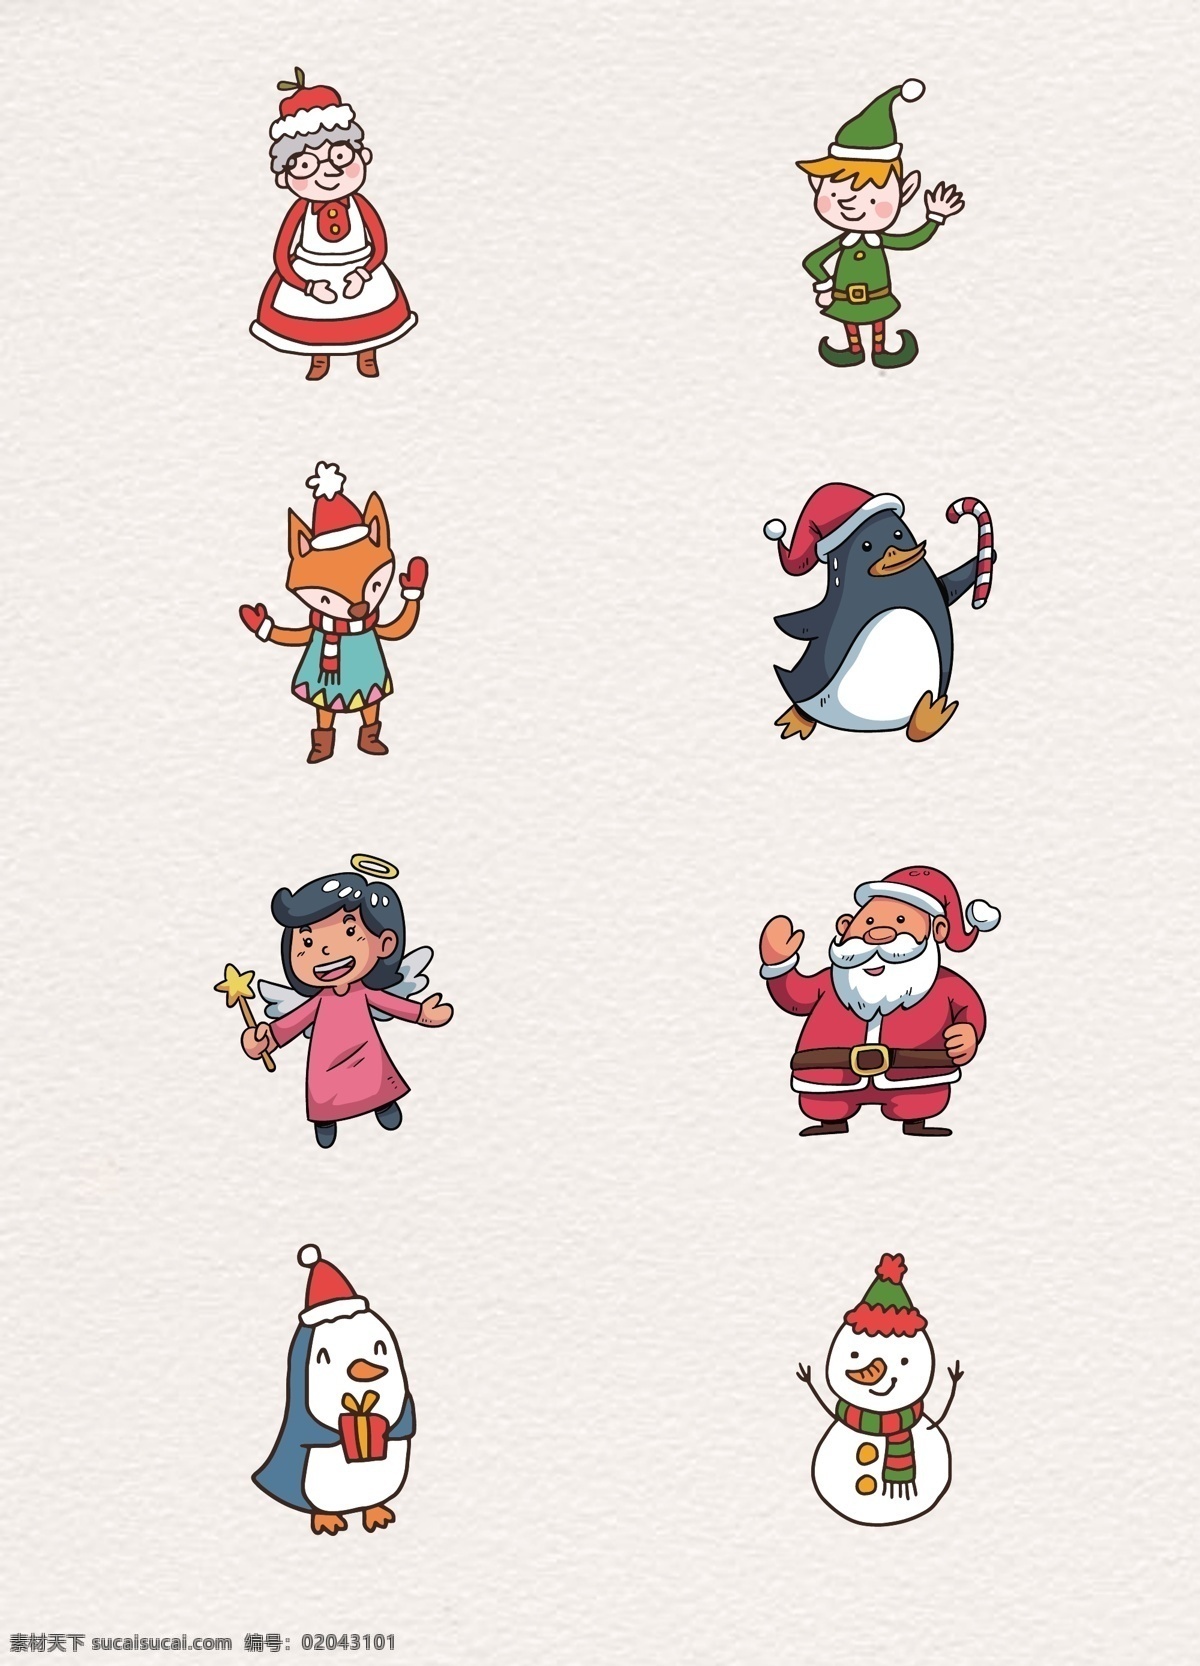 可爱 组 圣诞节 角色 卡通 创意 圣诞老人 节日元素 角色设计 护理 企鹅 天使 雪人